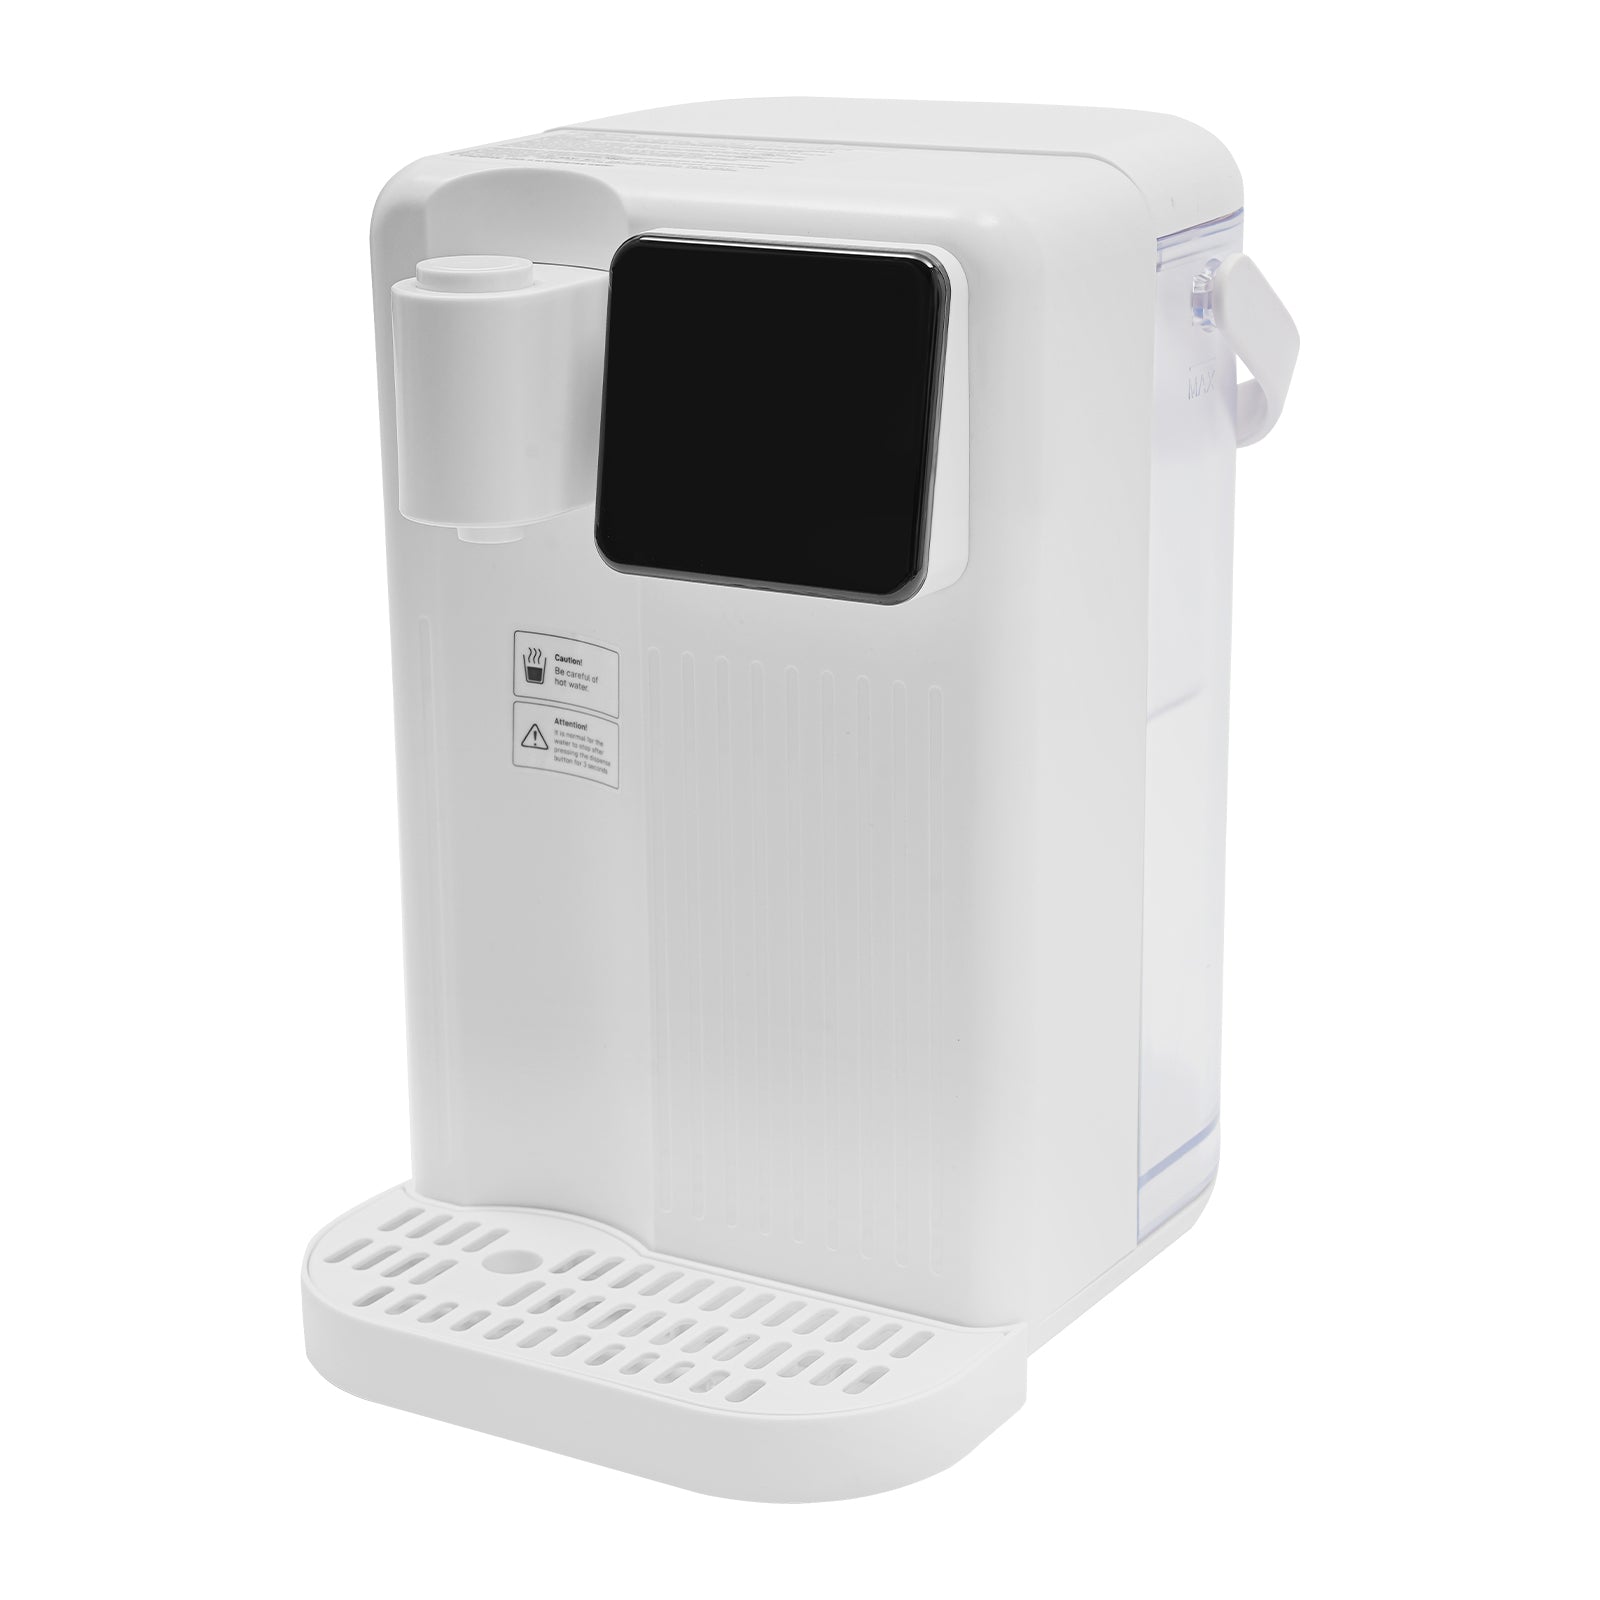 Distributore di acqua calda istantanea, 3 l, con display touch e indicatore LED, Potenza 1700 W, bianco